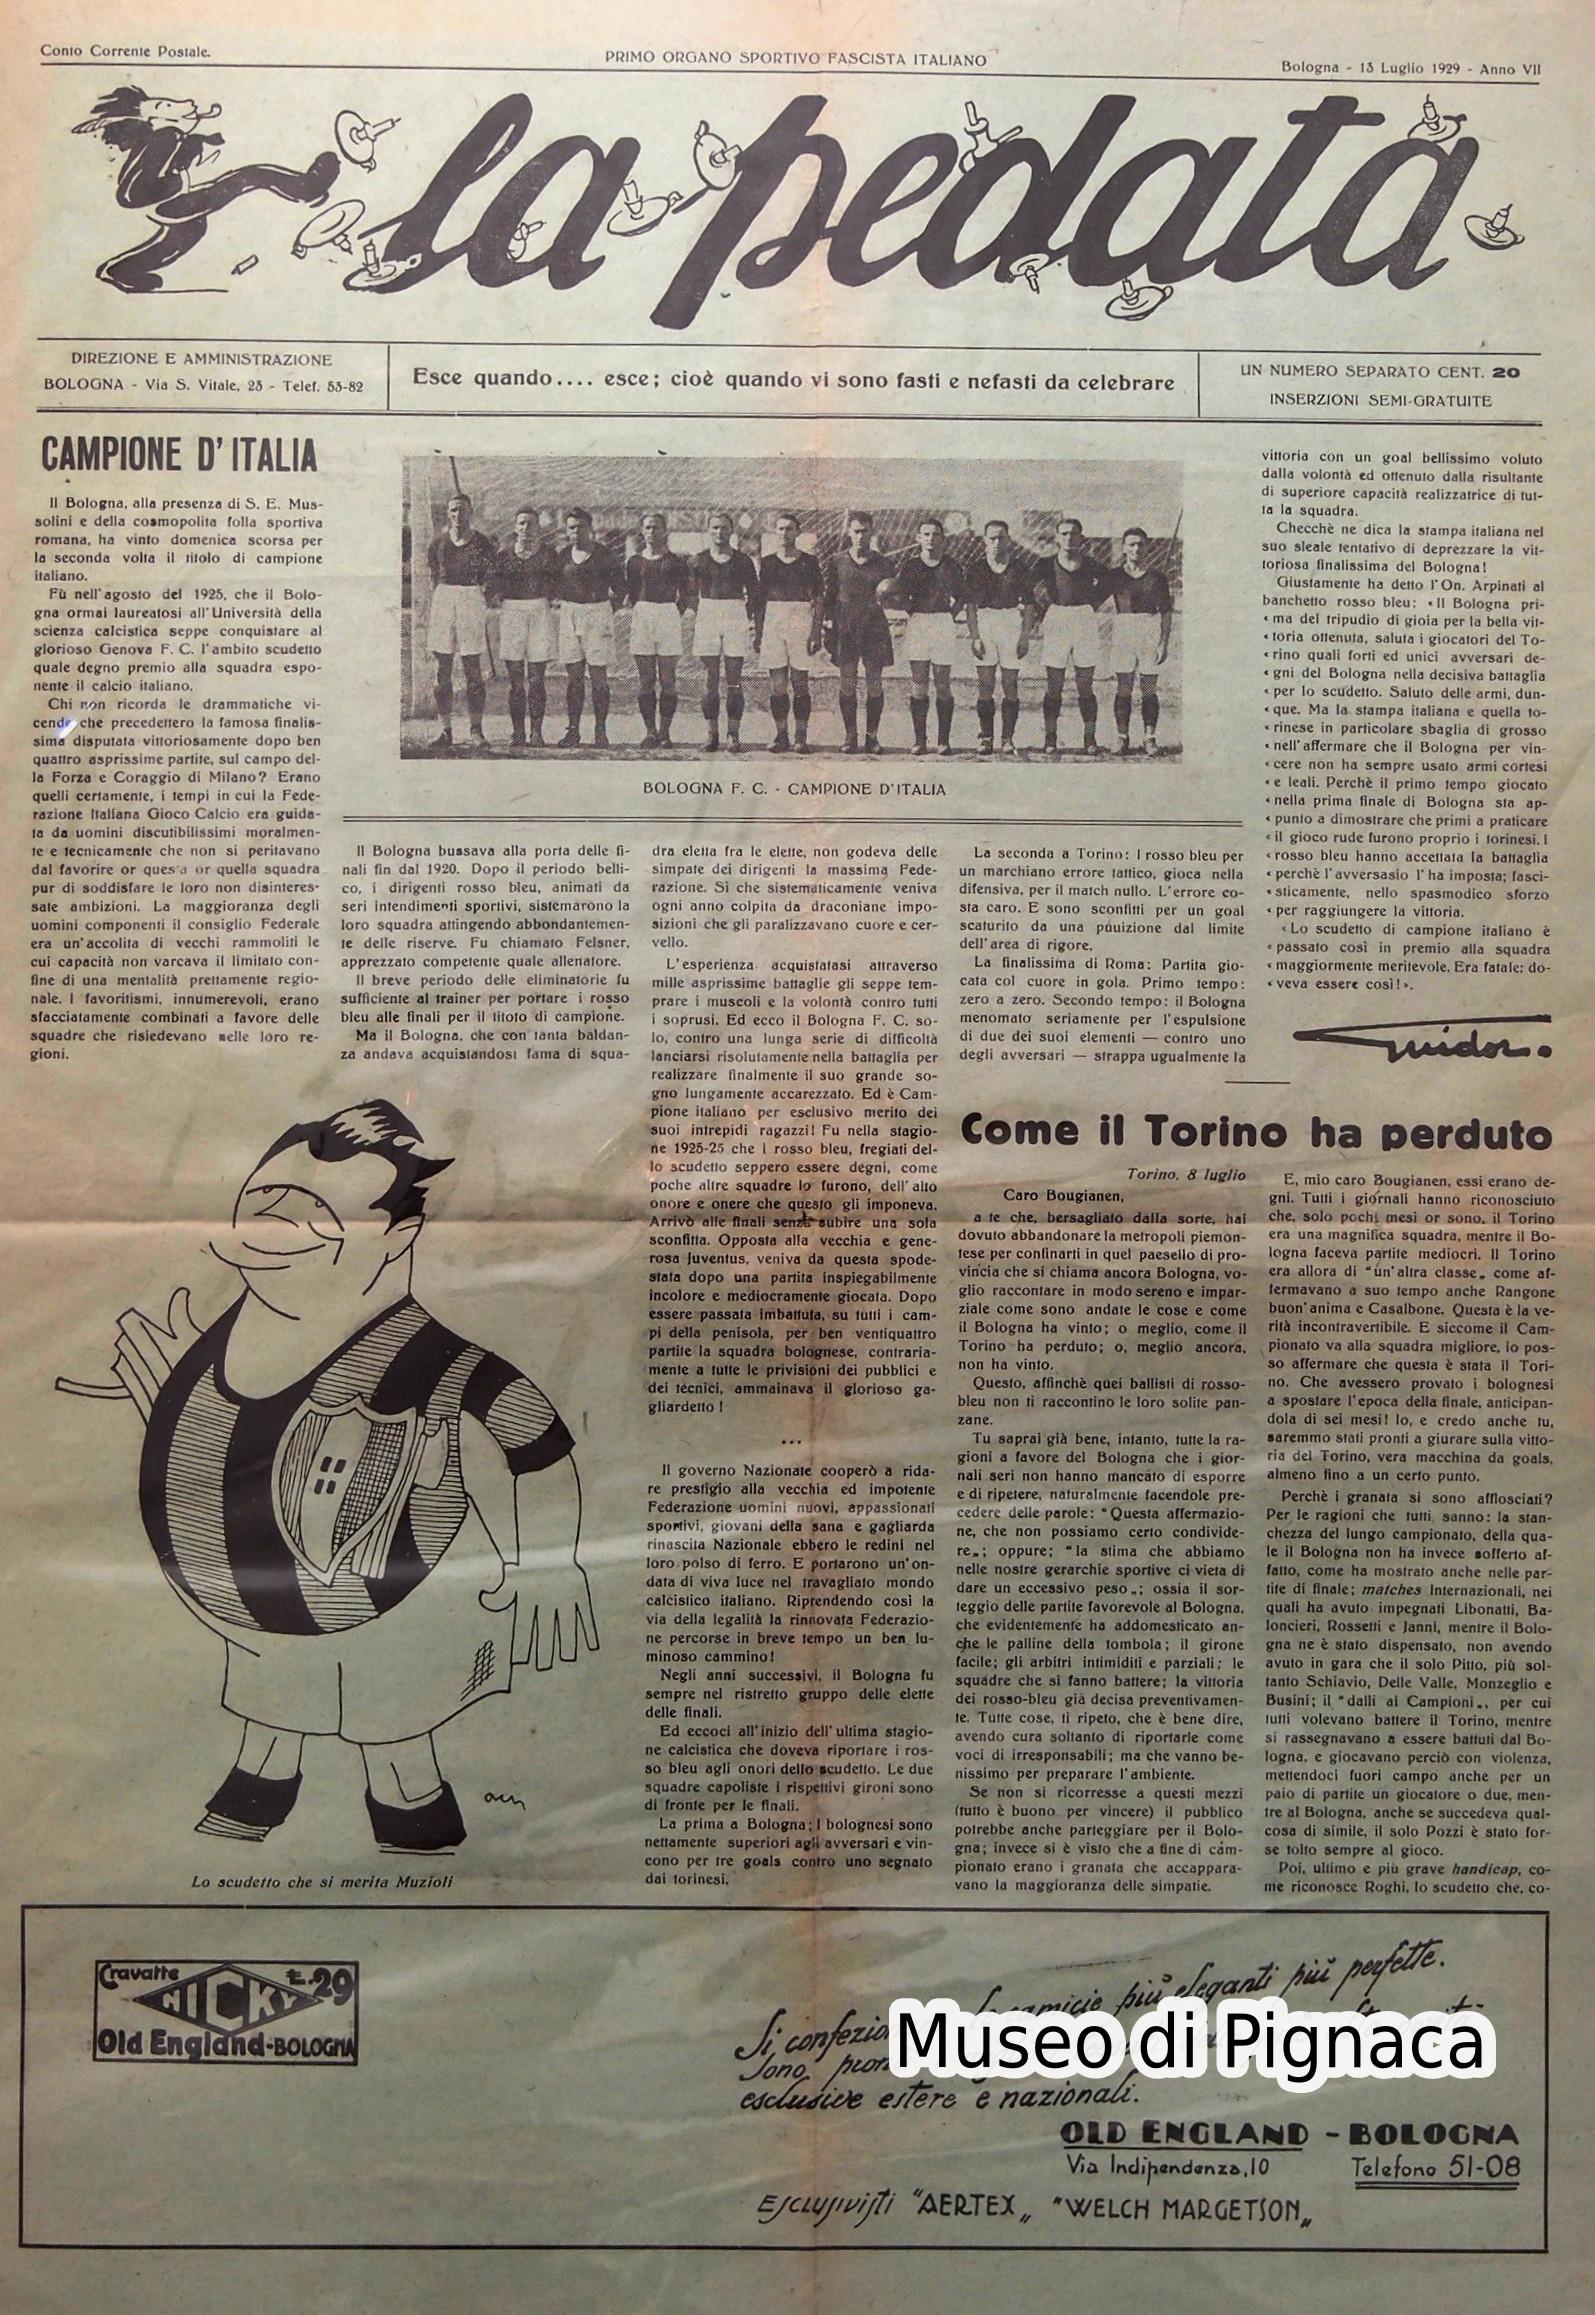 1929 numero speciale de LA PEDATA dedicata alla vittoria del campionato